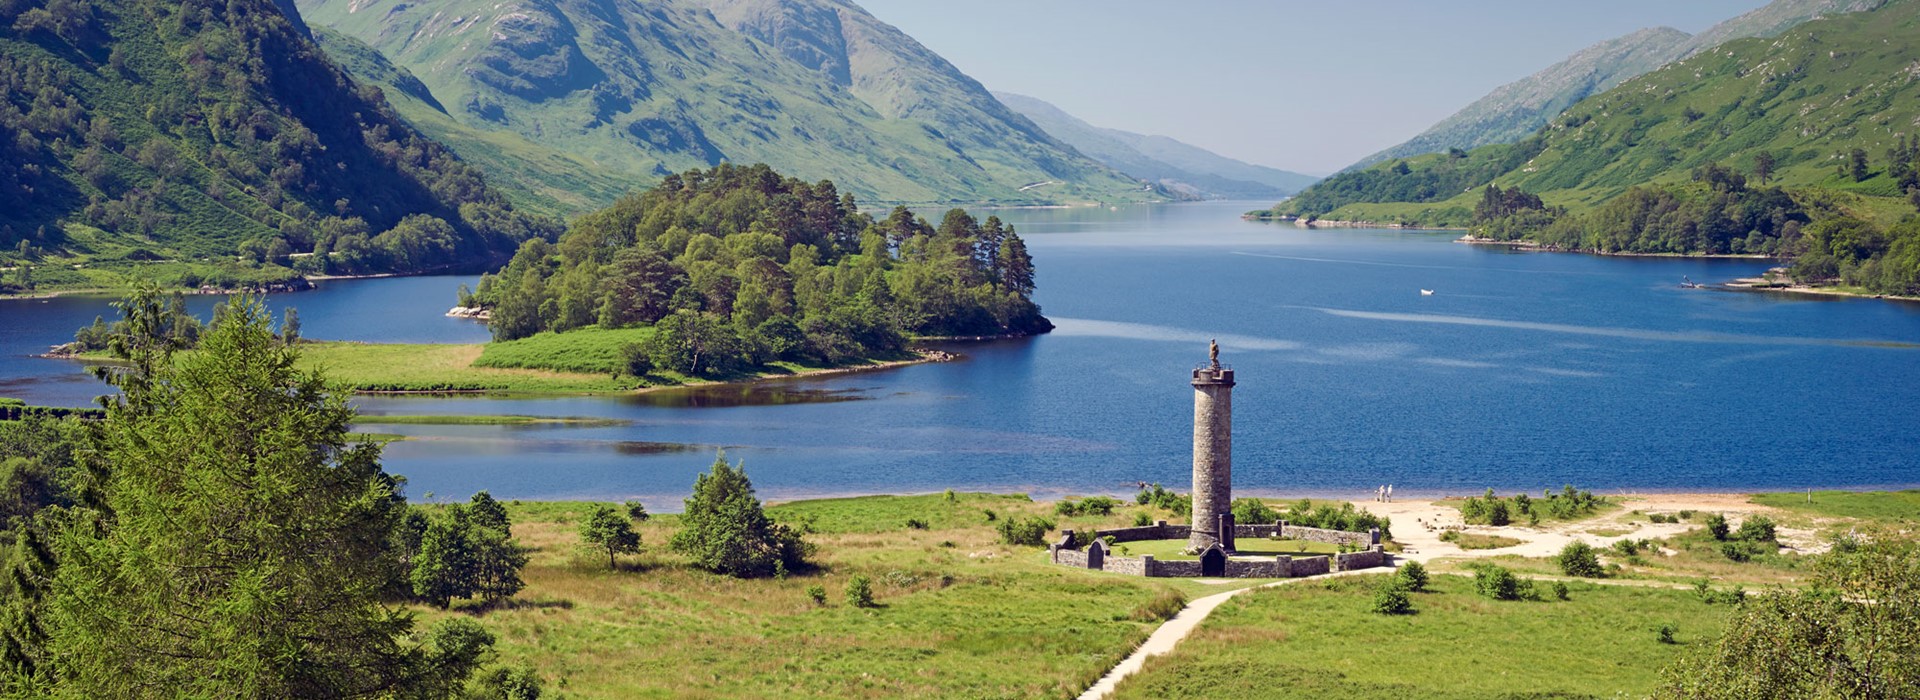 tourhub | Newmarket Holidays | Best of the Scottish Highlands 